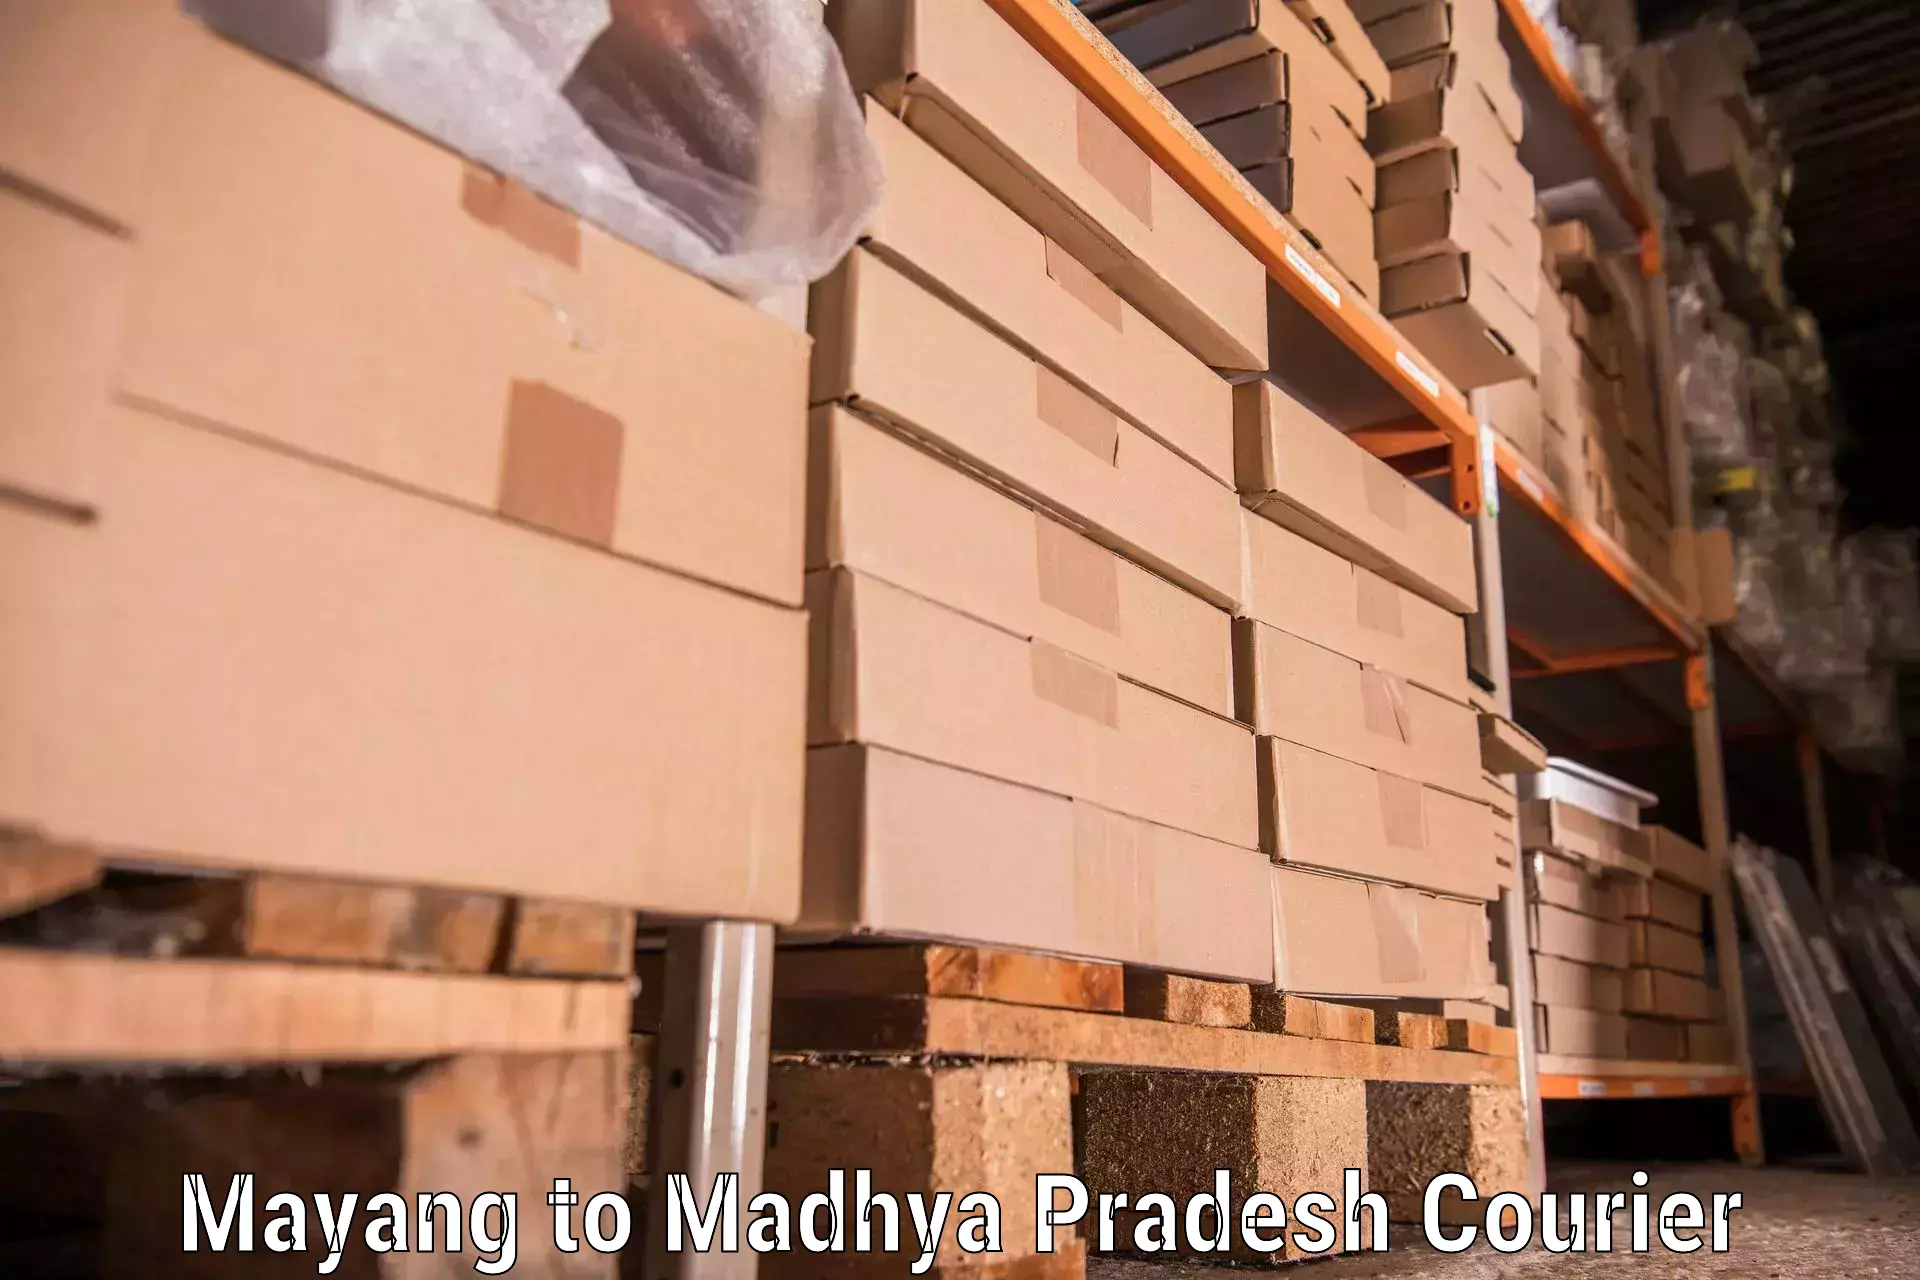 Professional moving company Mayang to Narsinghpur